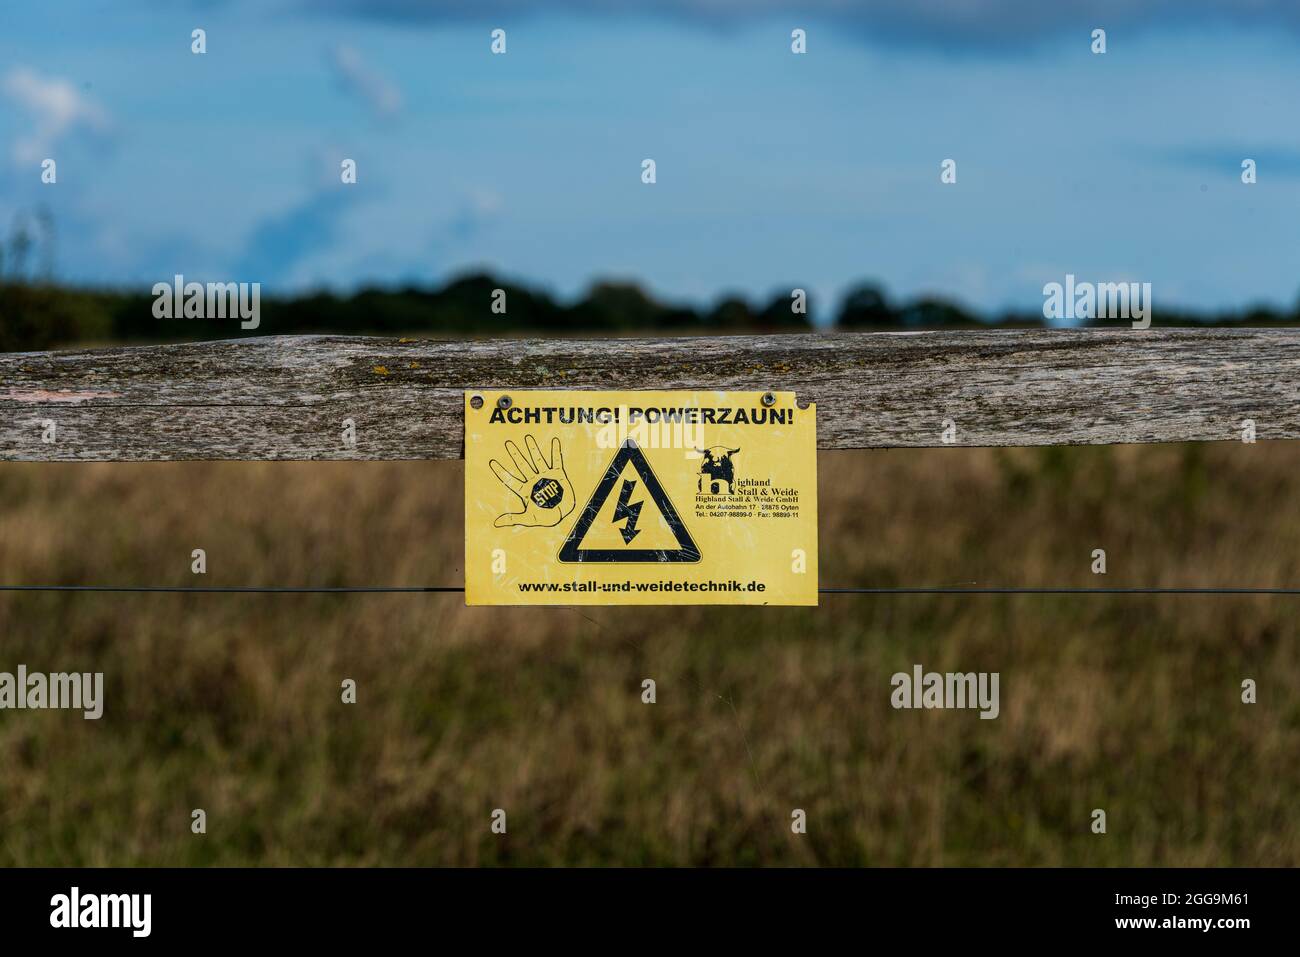 Warnung für wander durch die Geltinger Birk auf einen elektrischen Zaun für ein Tiergehege im Naturschutzgebiet der Geltinger Birk Foto Stock